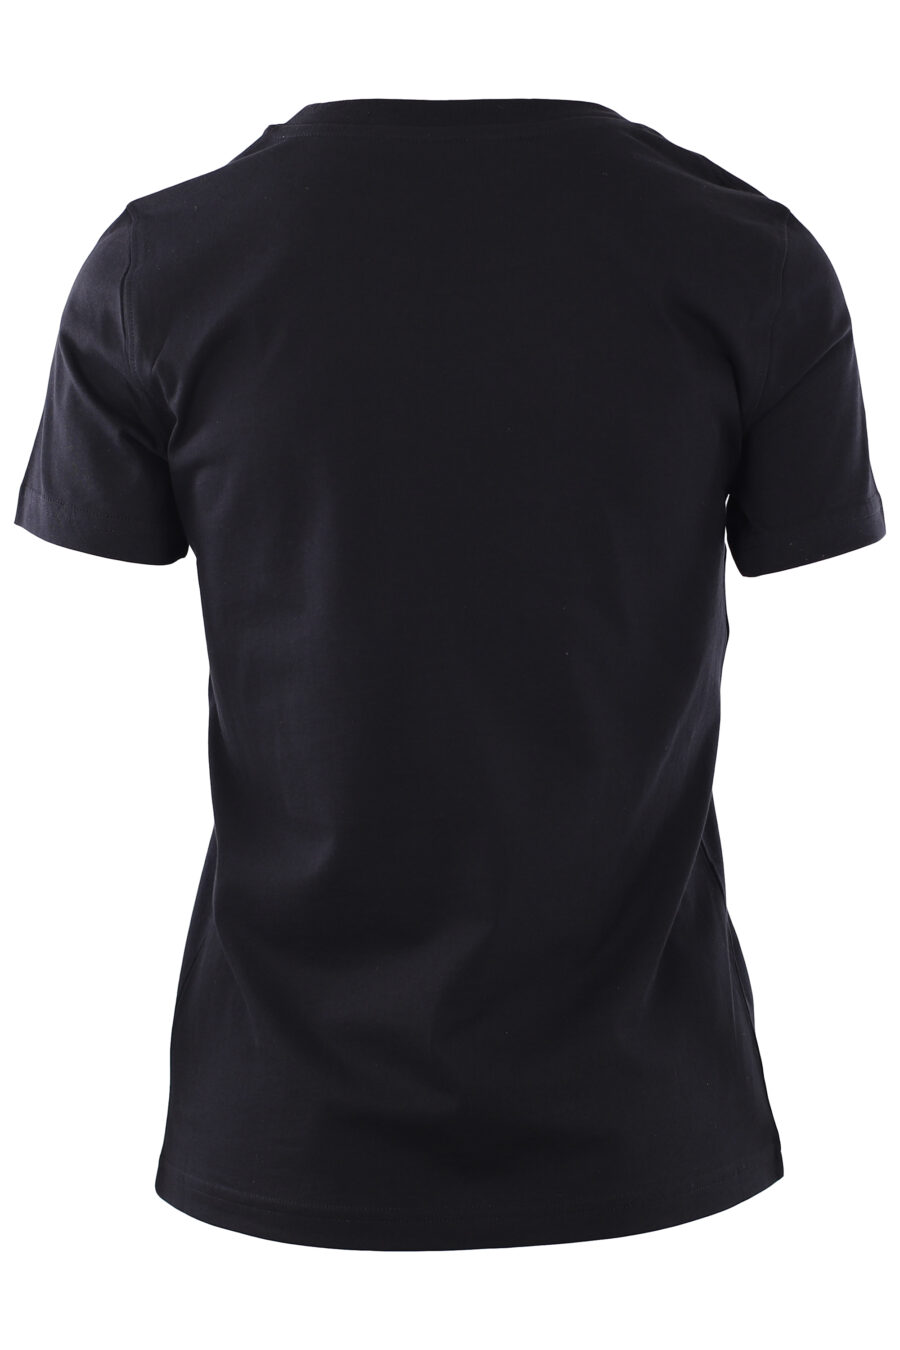 Camiseta negra con logo "smiley" - IMG 0268